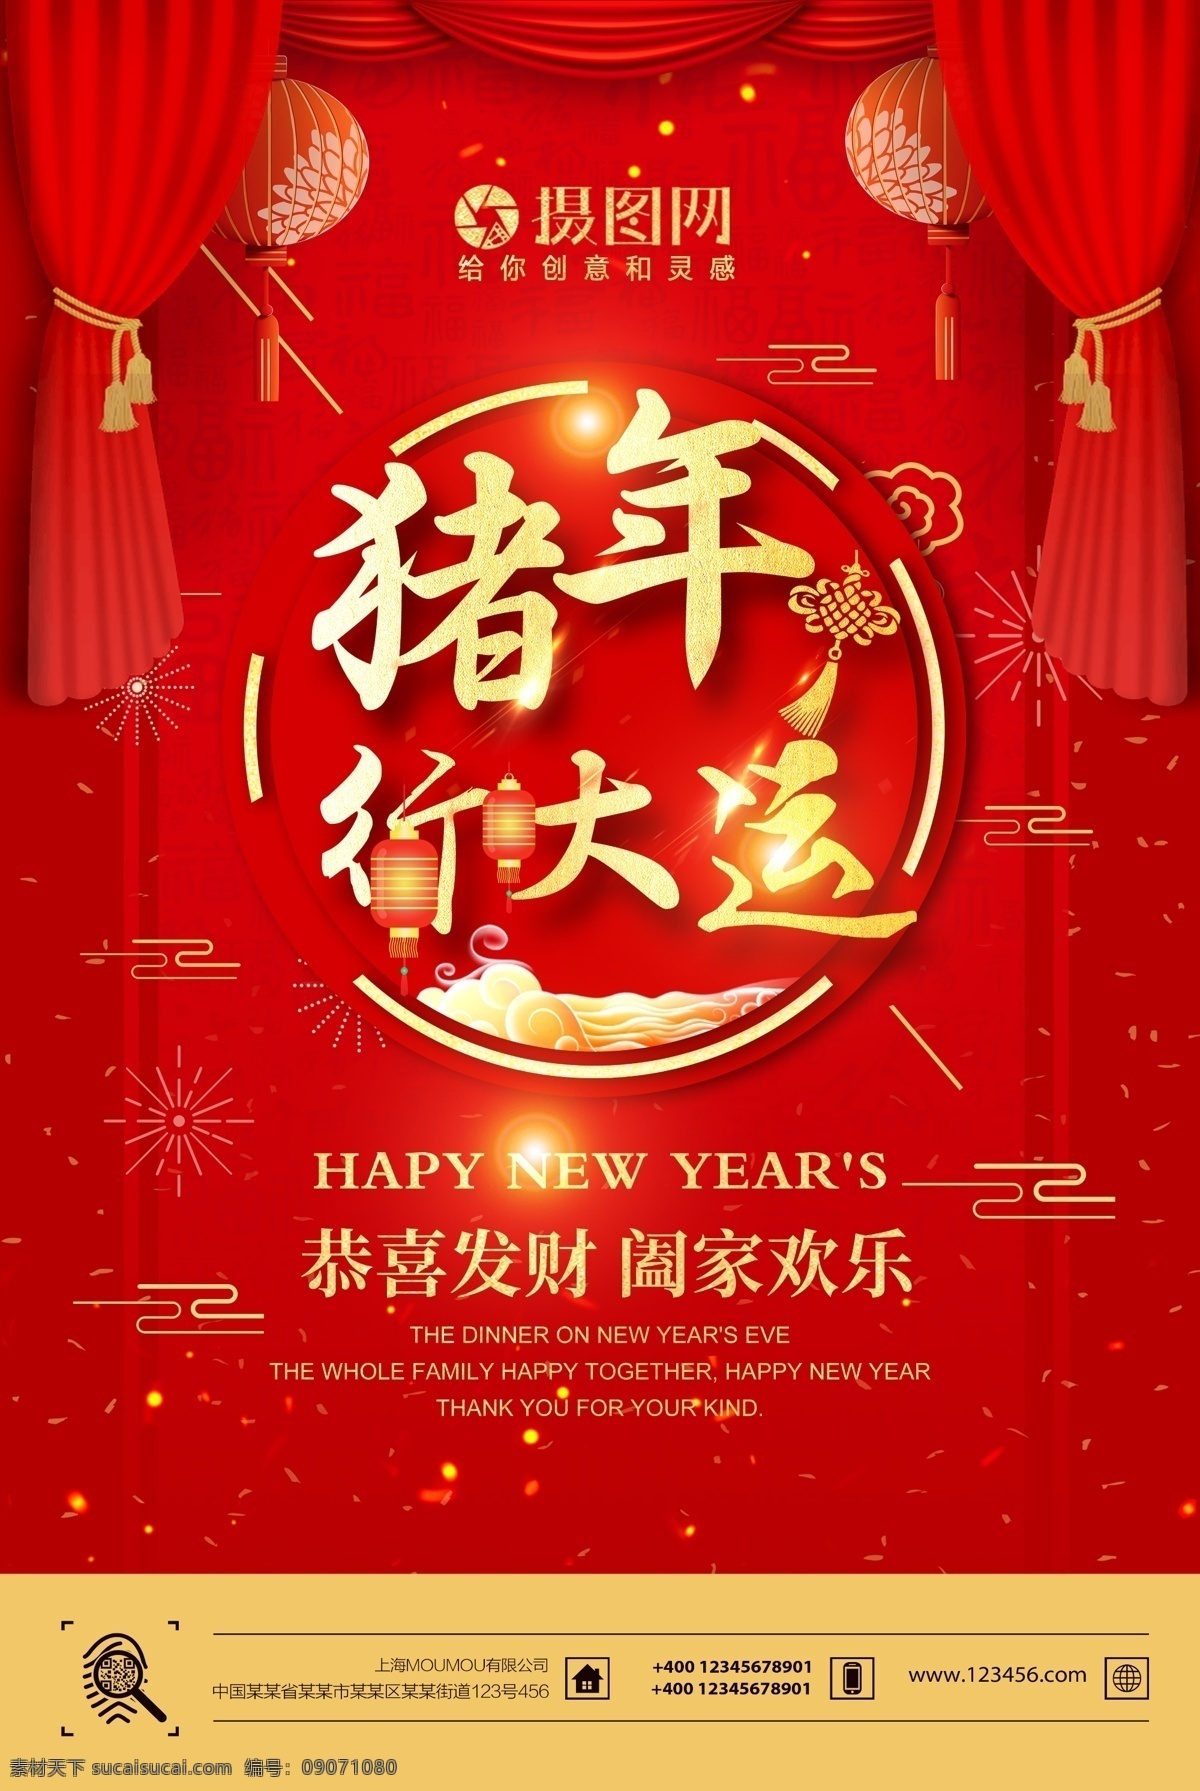 红色 喜庆 猪年 行 大运 节日 海报 恭贺新年 红色新年 新年 新春 春节 2019 节日海报